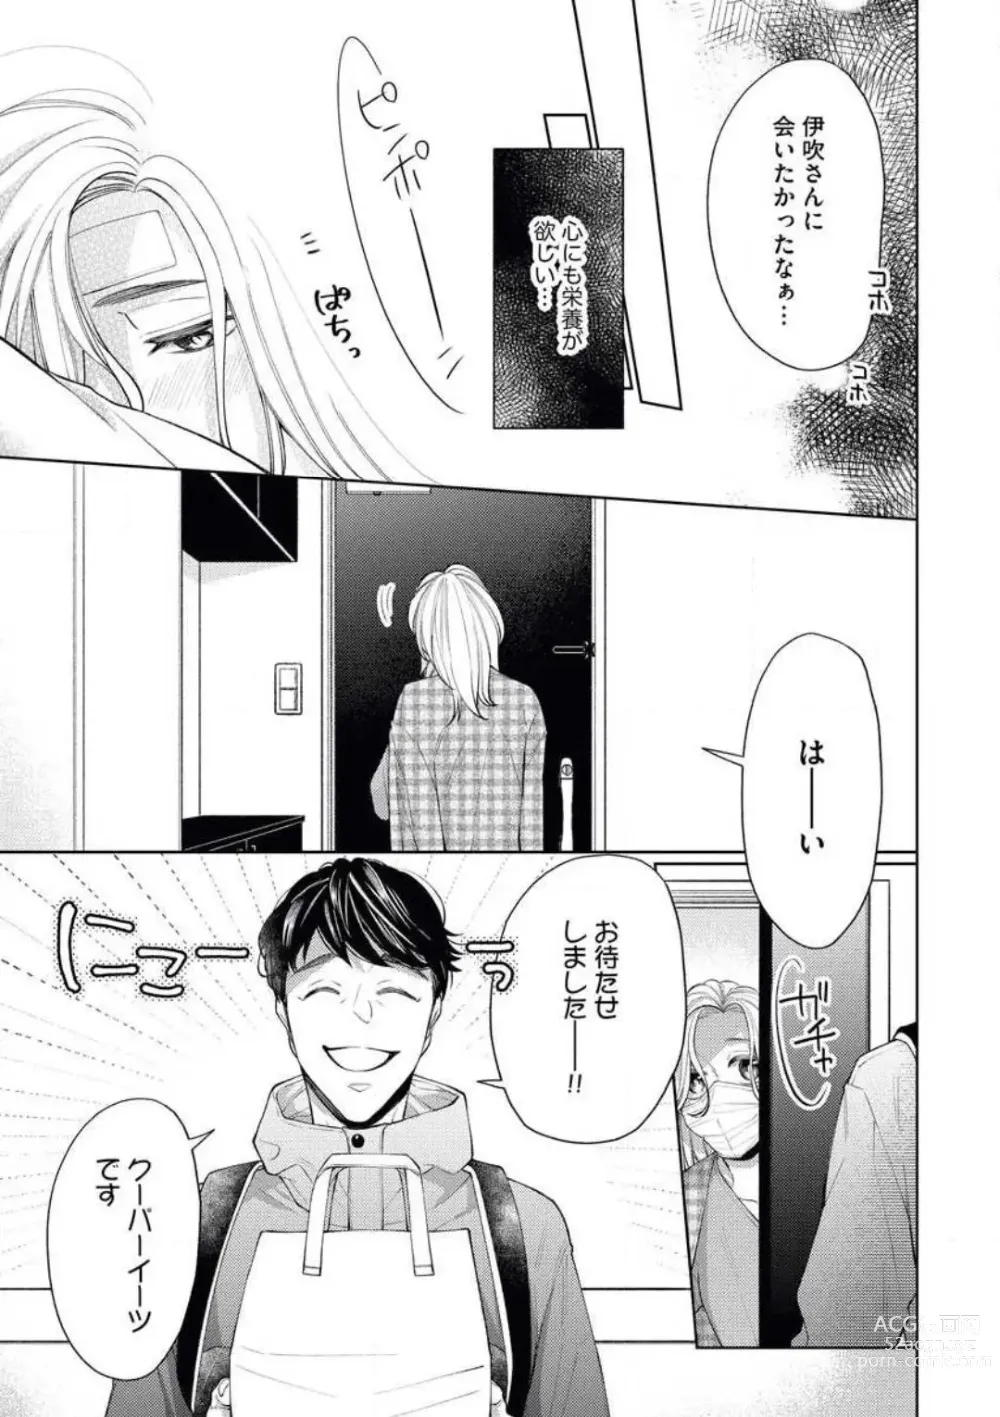 Page 9 of manga Anata o Kudasai!